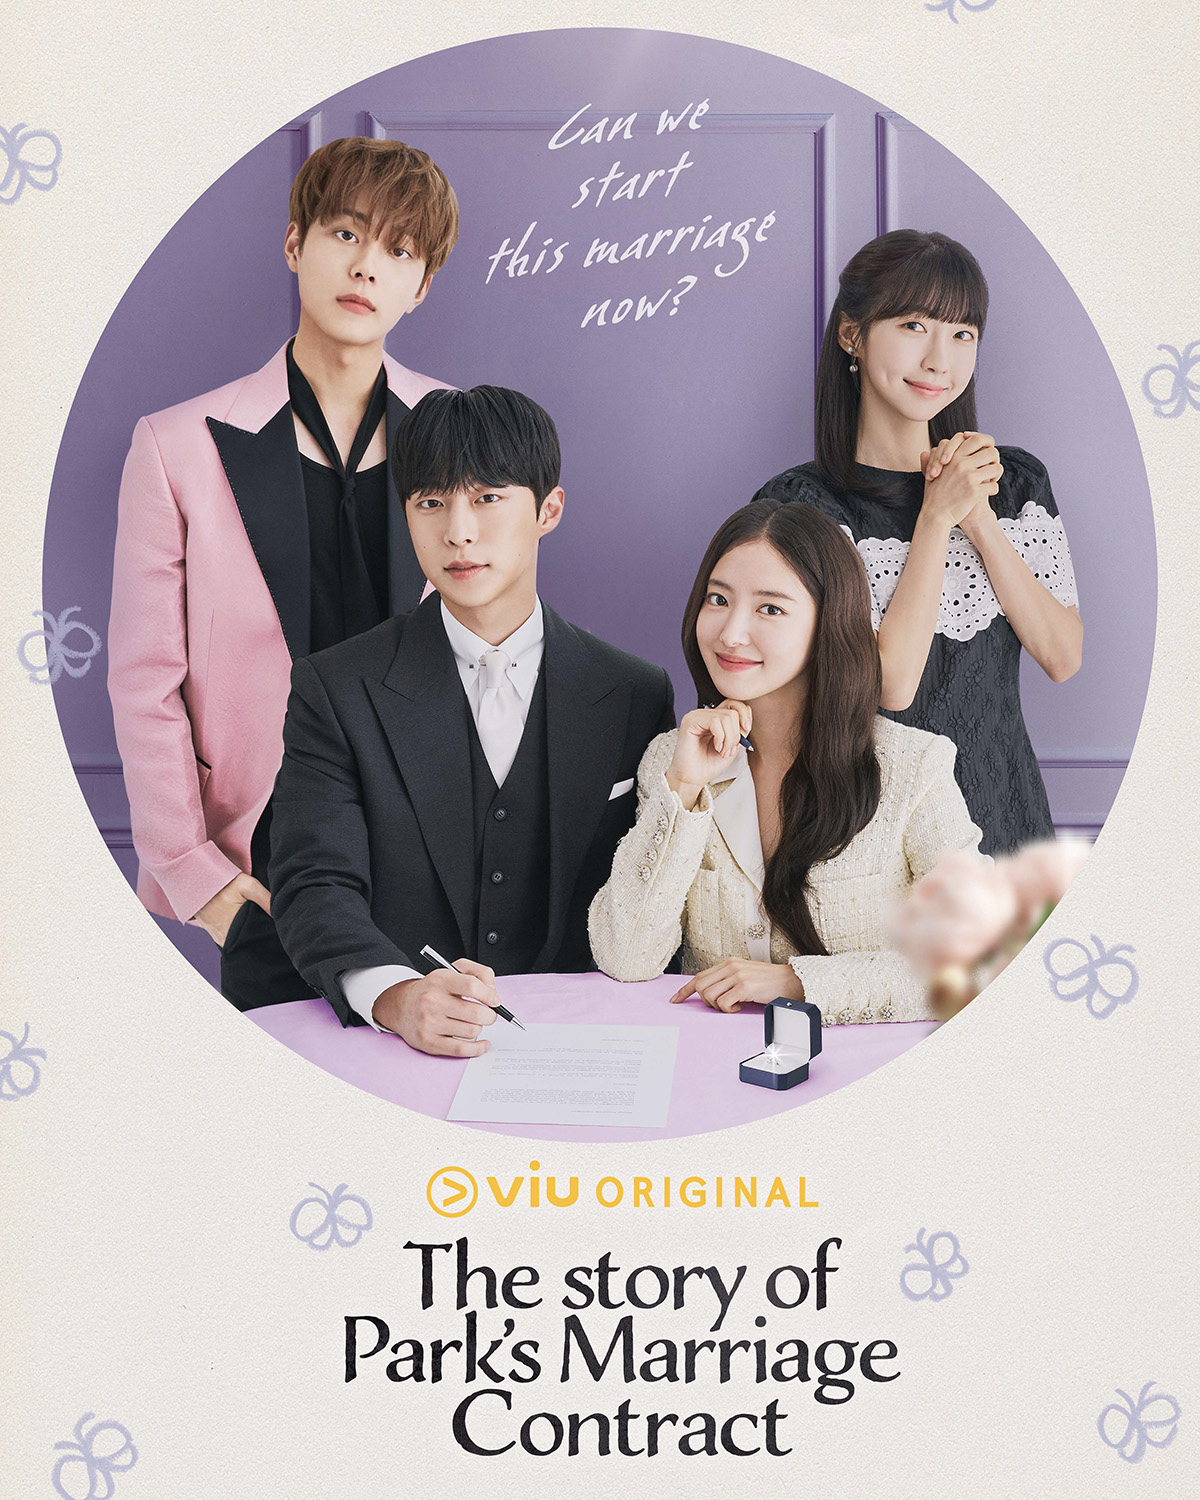 مسلسل قصة عقد زواج بارك The Story of Park’s Marriage Contract الحلقة 1